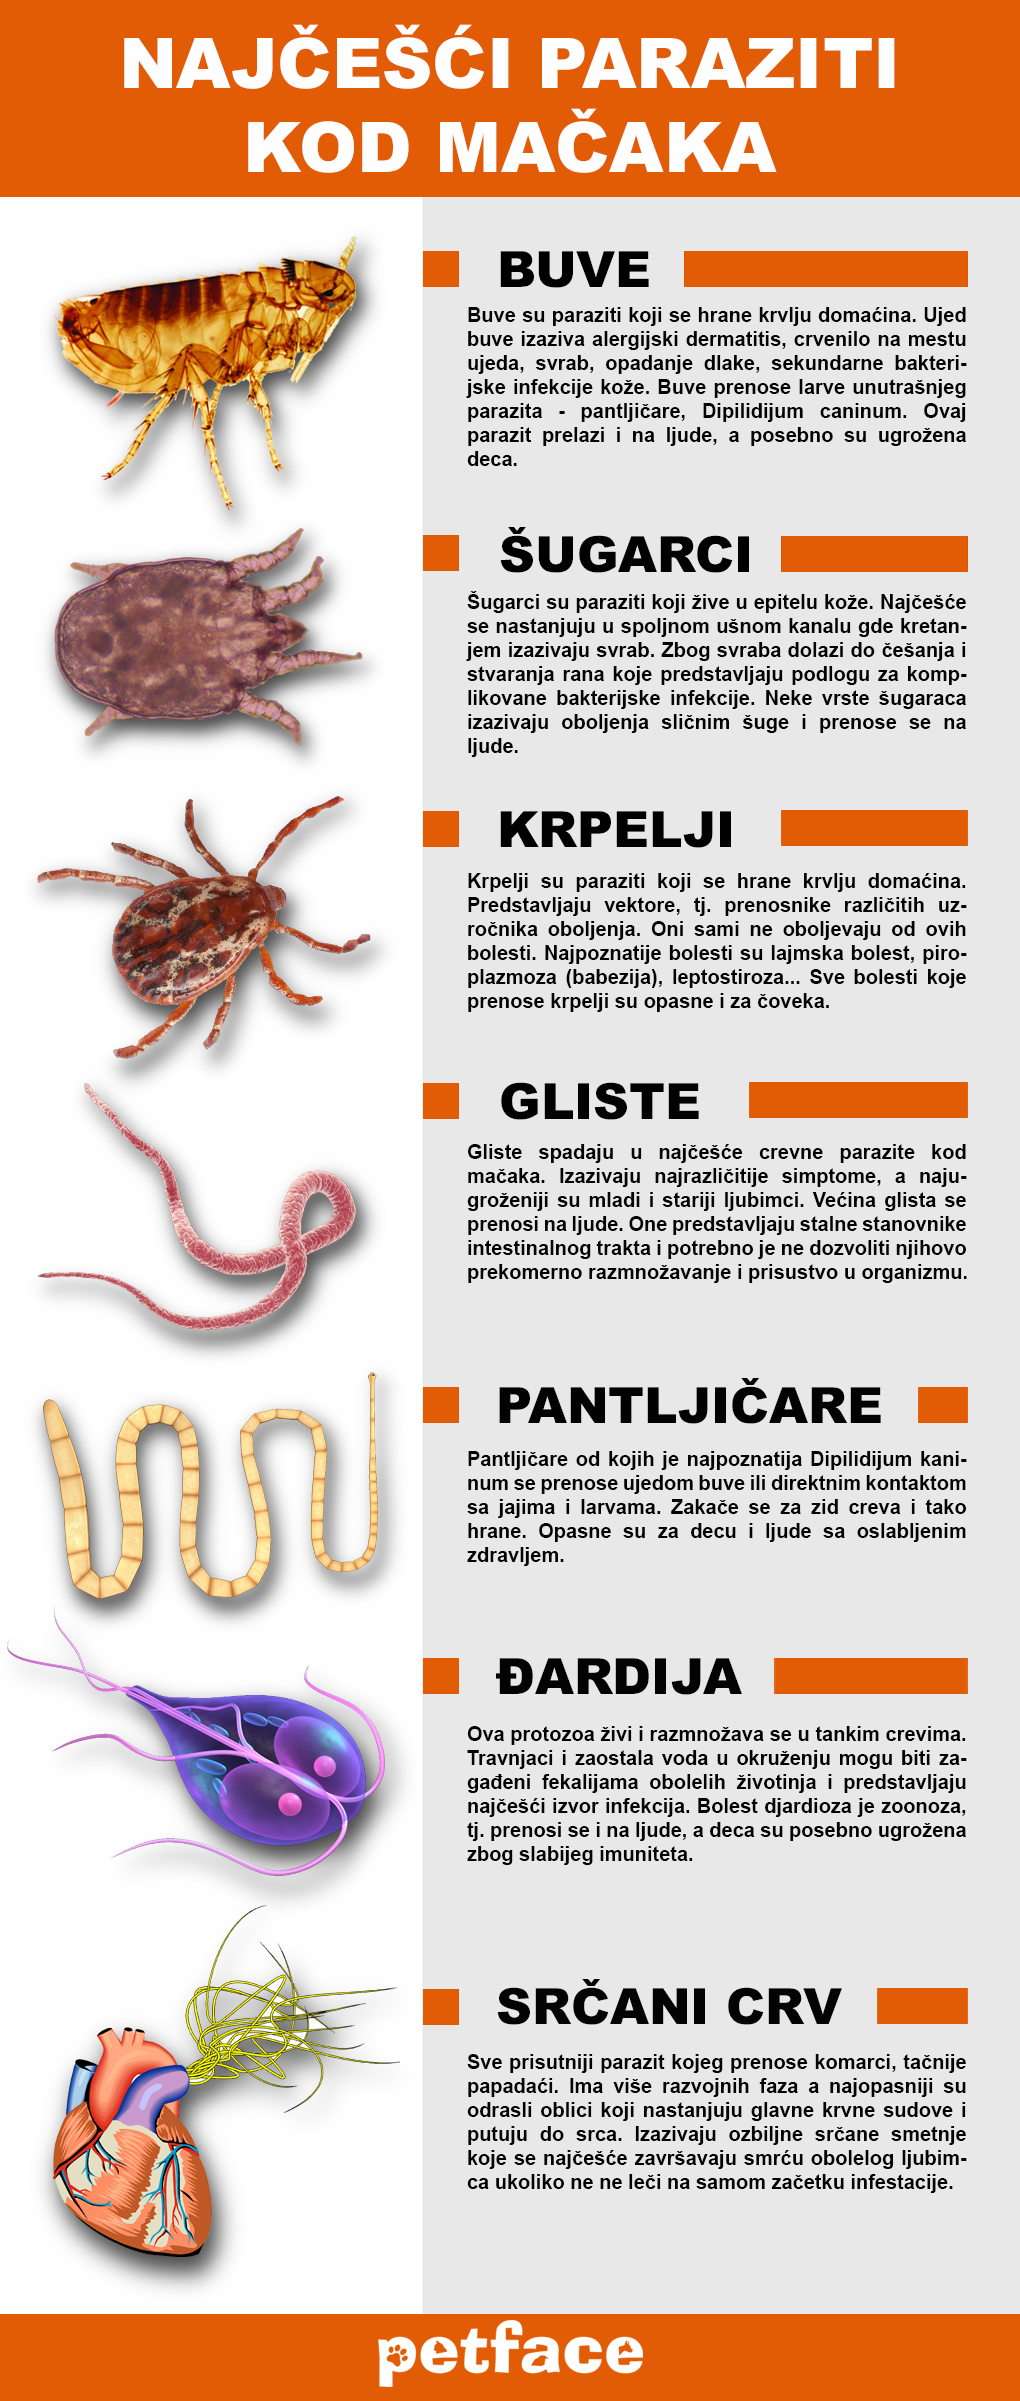 crevni paraziti kod macaka prirodni lek)